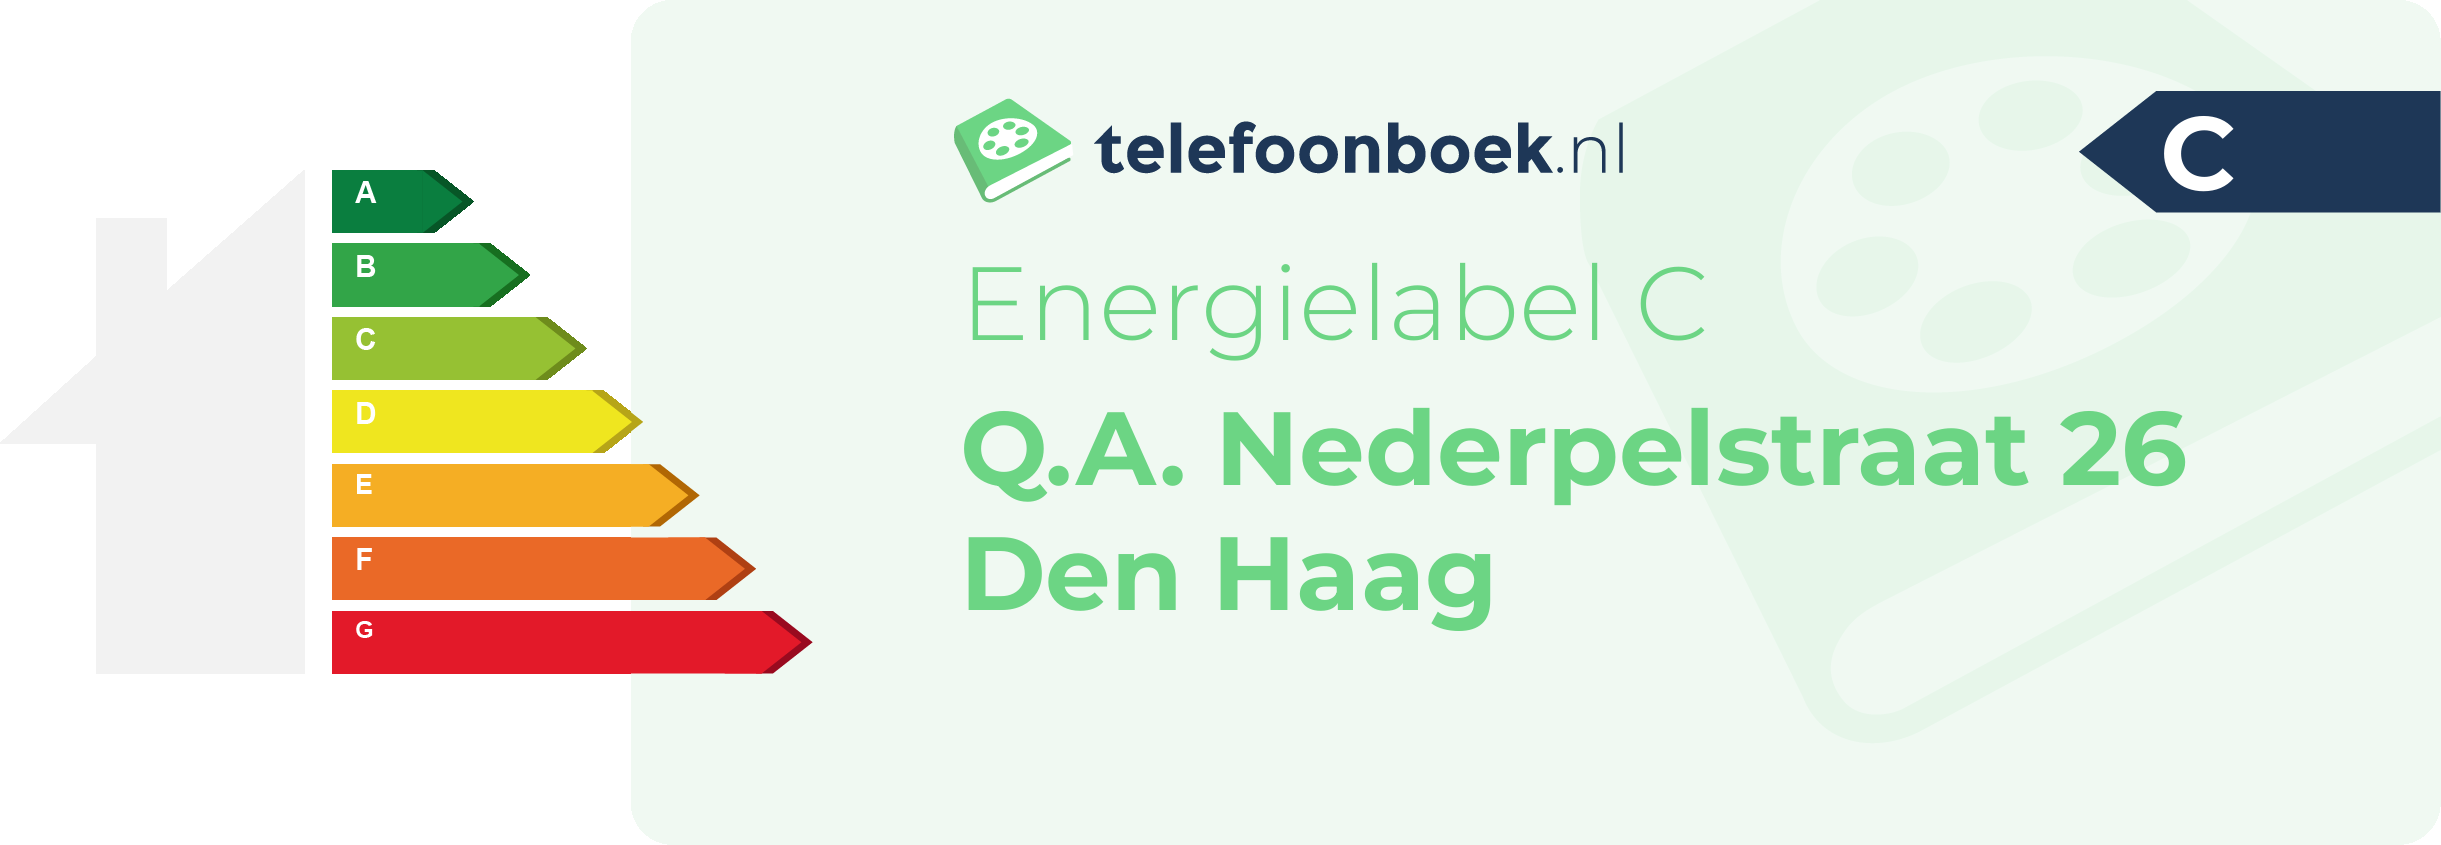 Energielabel Q.A. Nederpelstraat 26 Den Haag